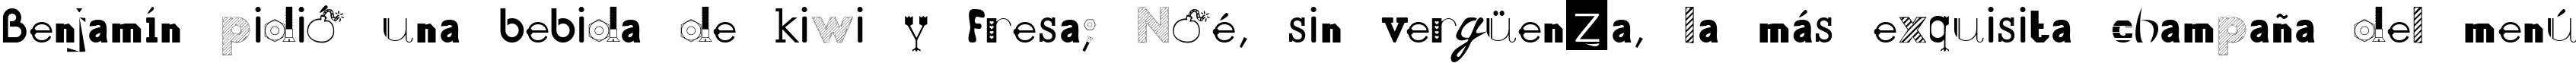 Пример написания шрифтом 50 Fonts 2 текста на испанском